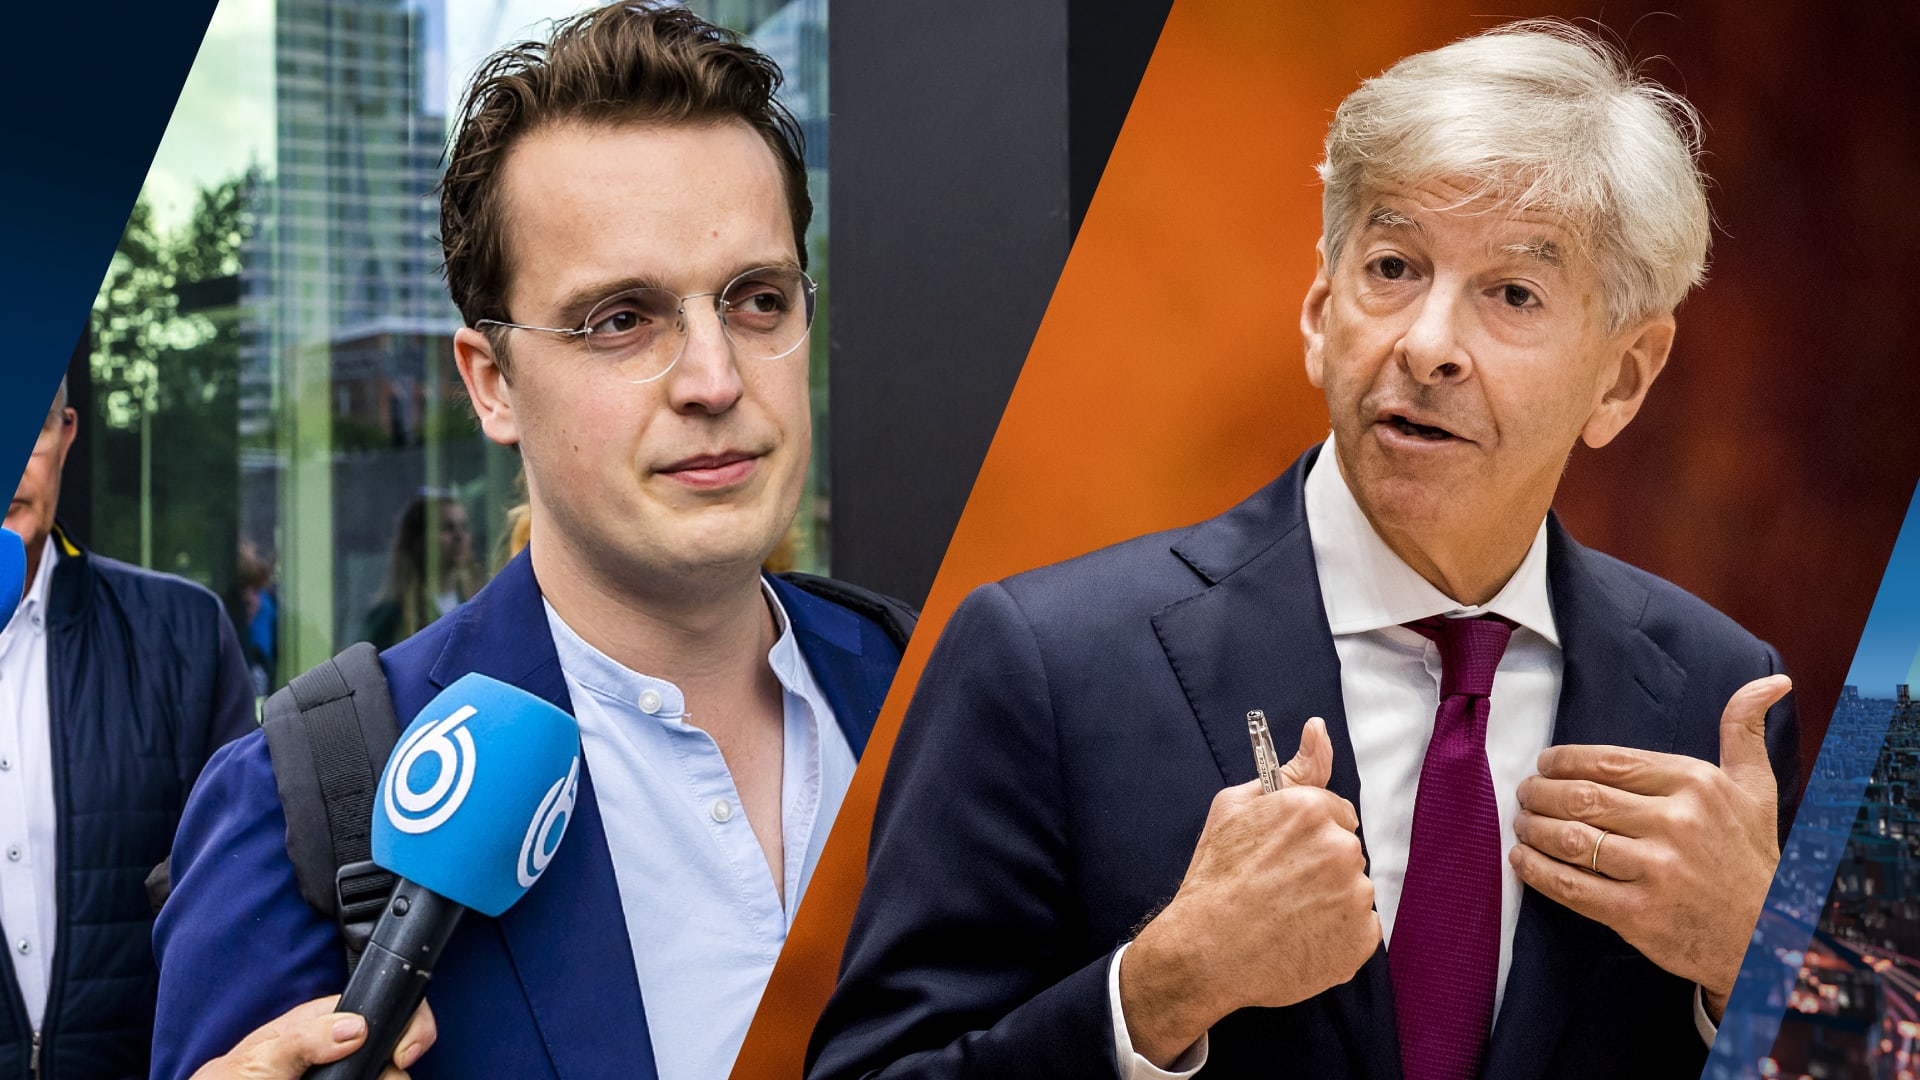 'Ronald Plasterk benaderde Sywert van Lienden voor investeringen in zijn bedrijf'